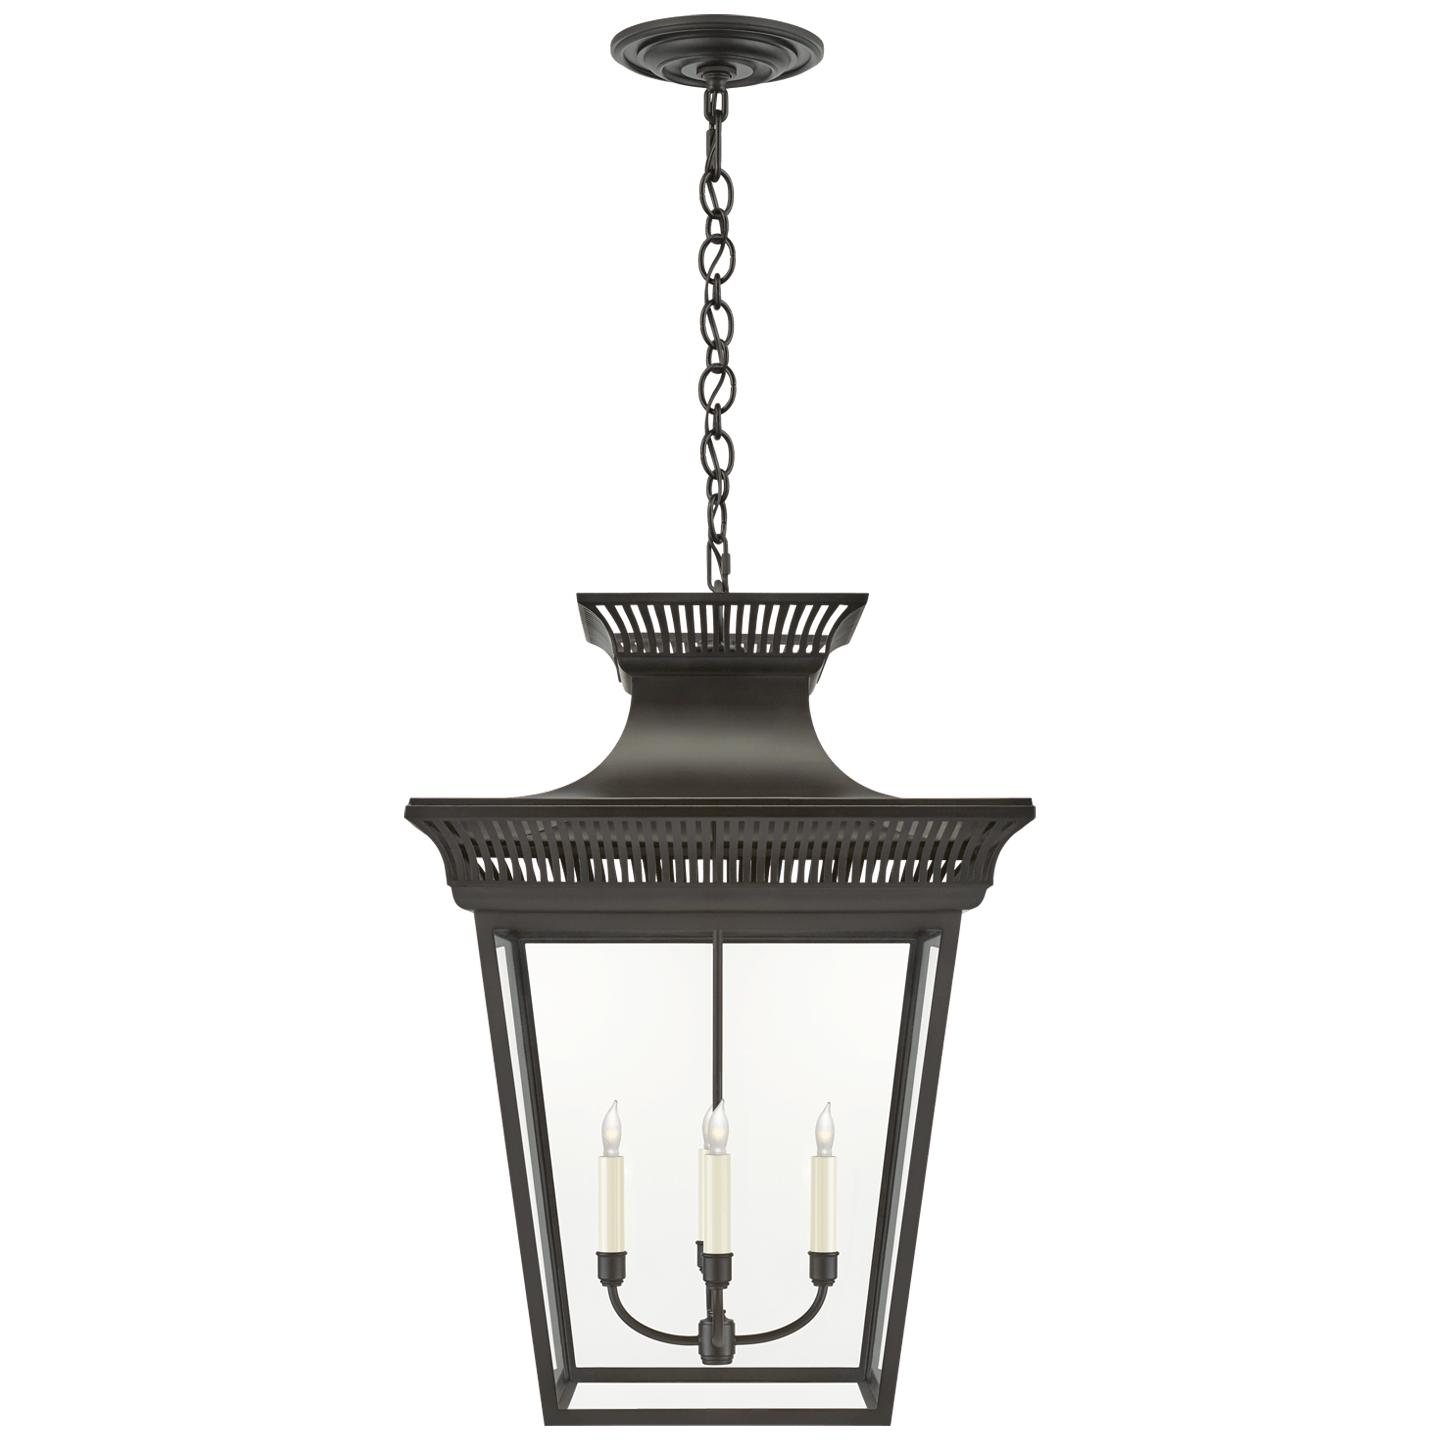 Купить Подвесной светильник Elsinore Extra-Large Hanging Lantern в интернет-магазине roooms.ru